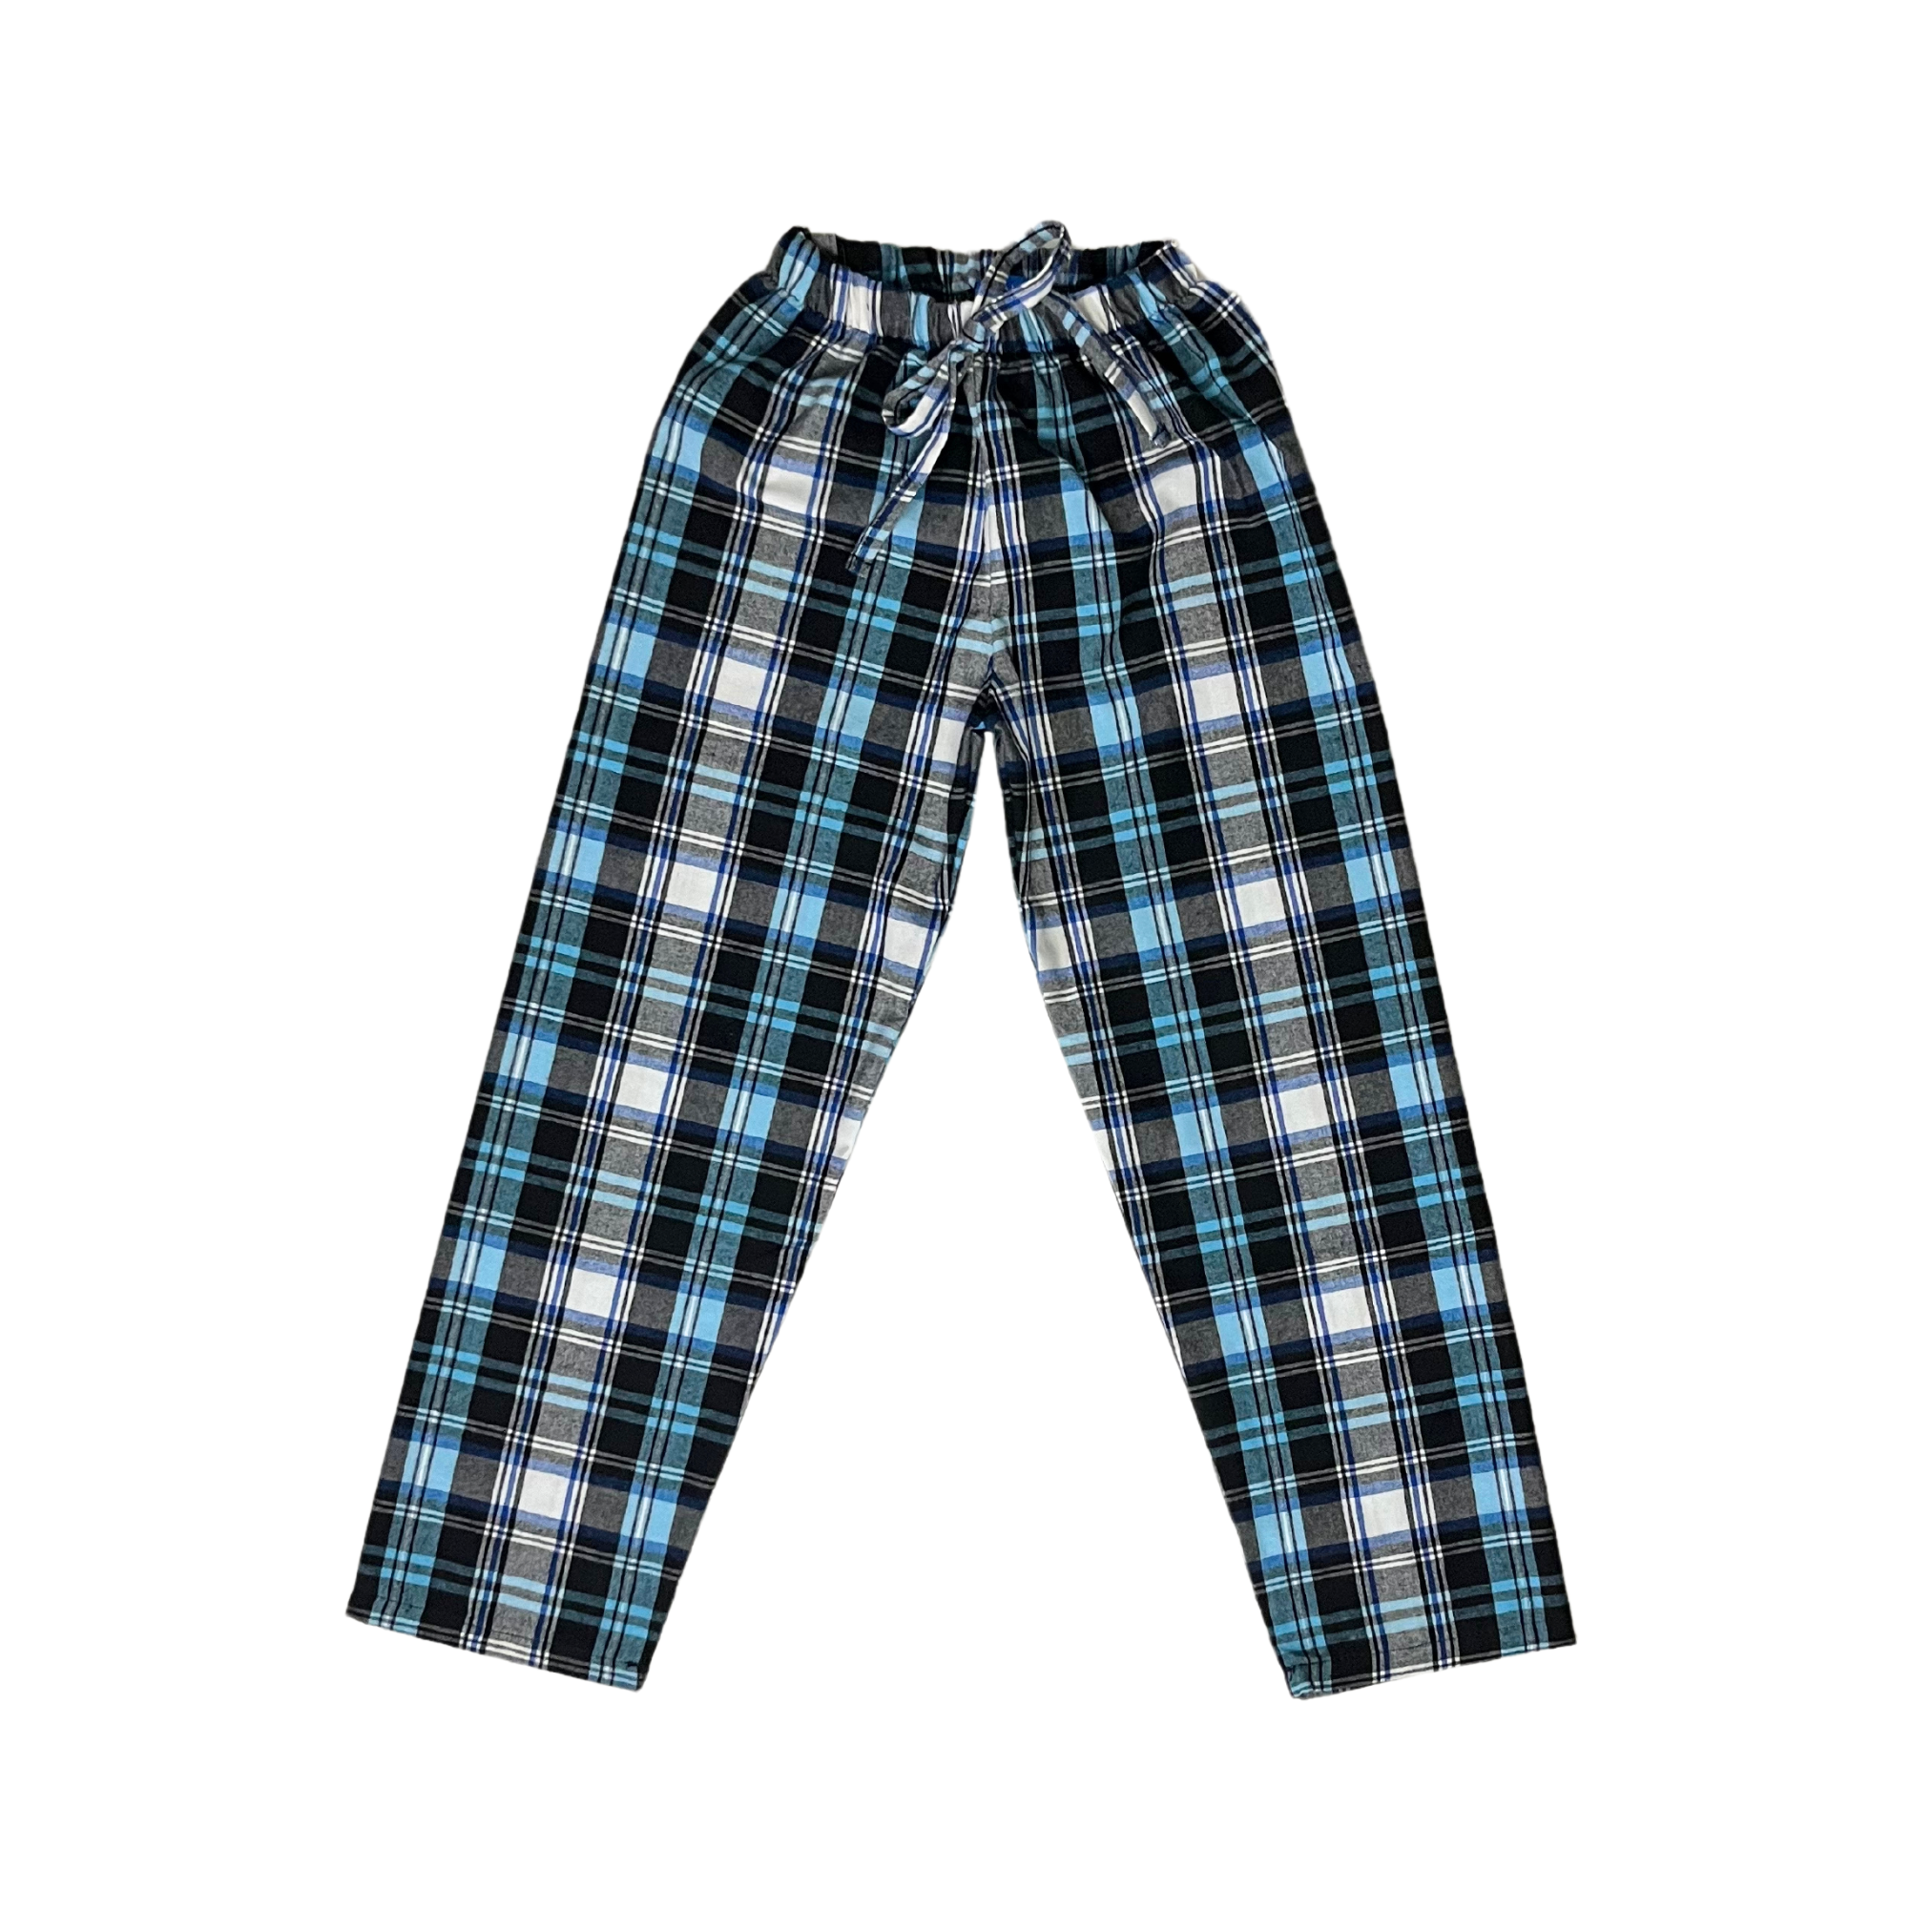 Pantalones Pijama Negro/Celeste/Azul Unisex Bebés 10013